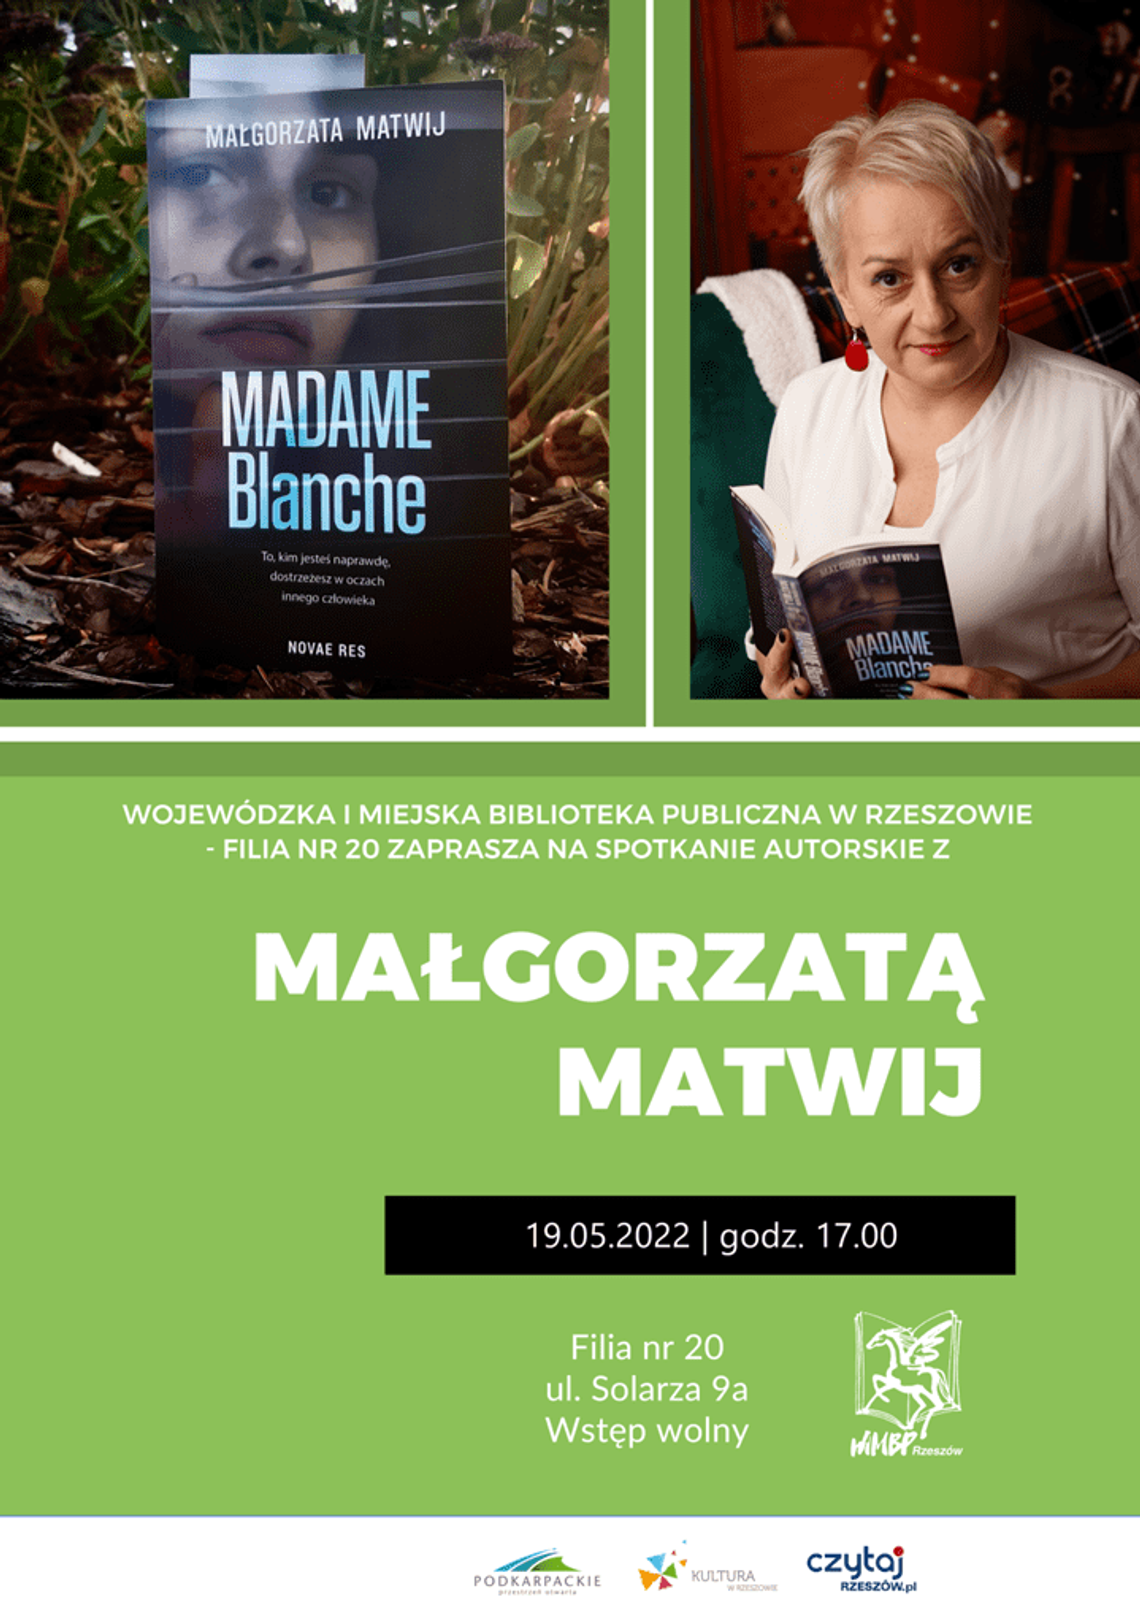 Spotkanie autorskie z Małgorzatą Matwij